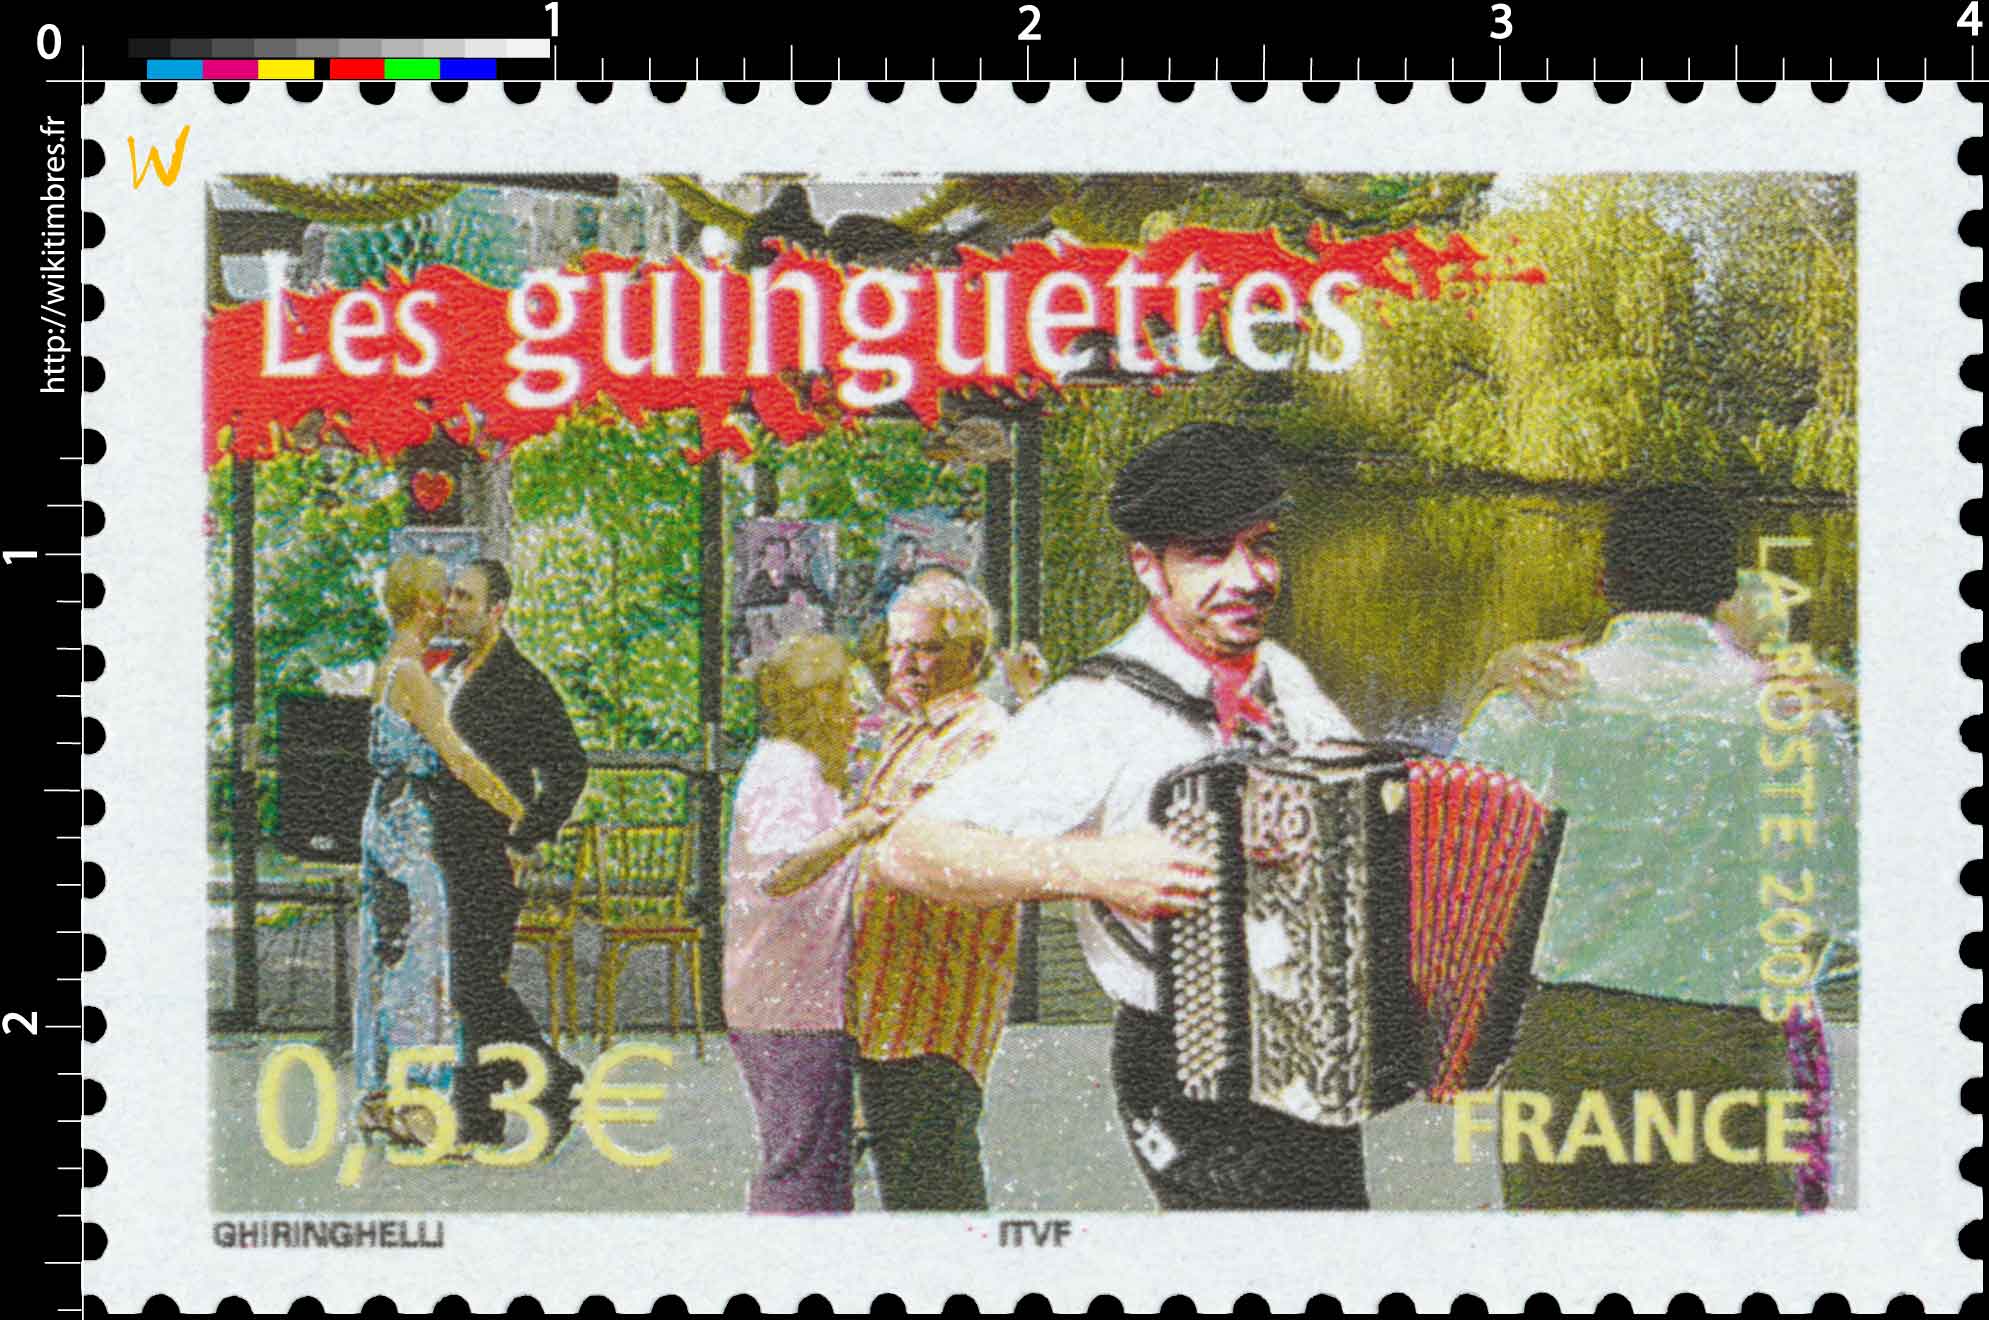 2005 Les guinguettes